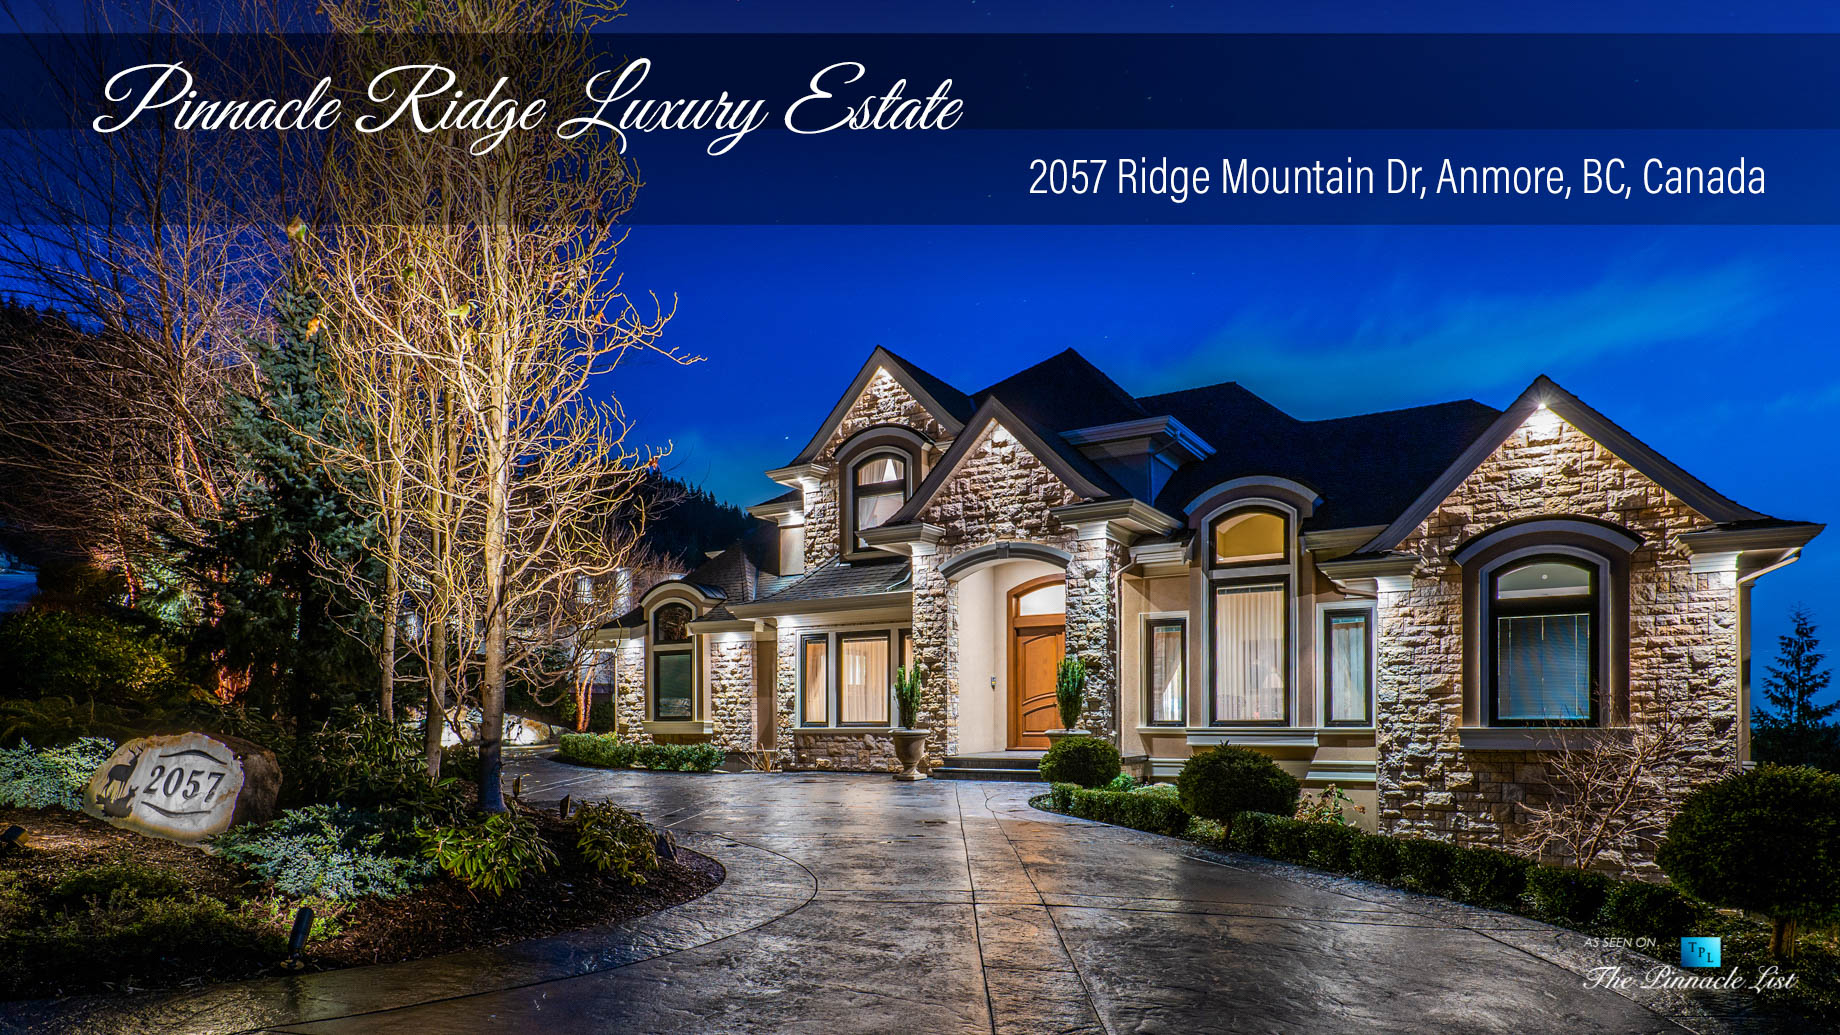 Pinnacle Ridge Luxury Estate – 2057 Ridge Mountain Dr, Anmore, BC, Canada